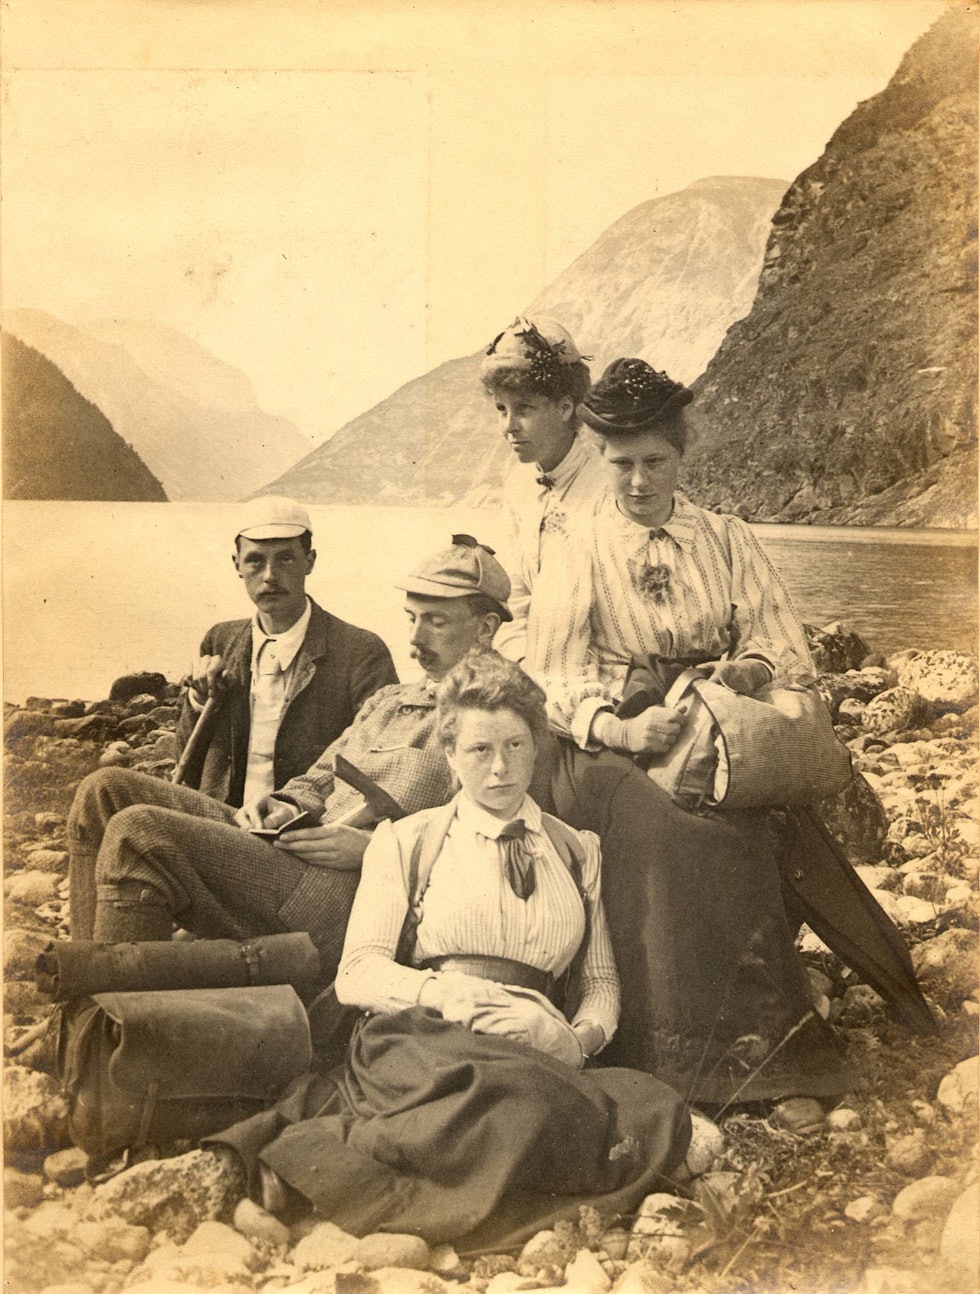 Søstrene Ruth, Evelyn og Mabel Spence Watson i Norge. Evelyn i midten. Foto: Utlånt av Ben Beck